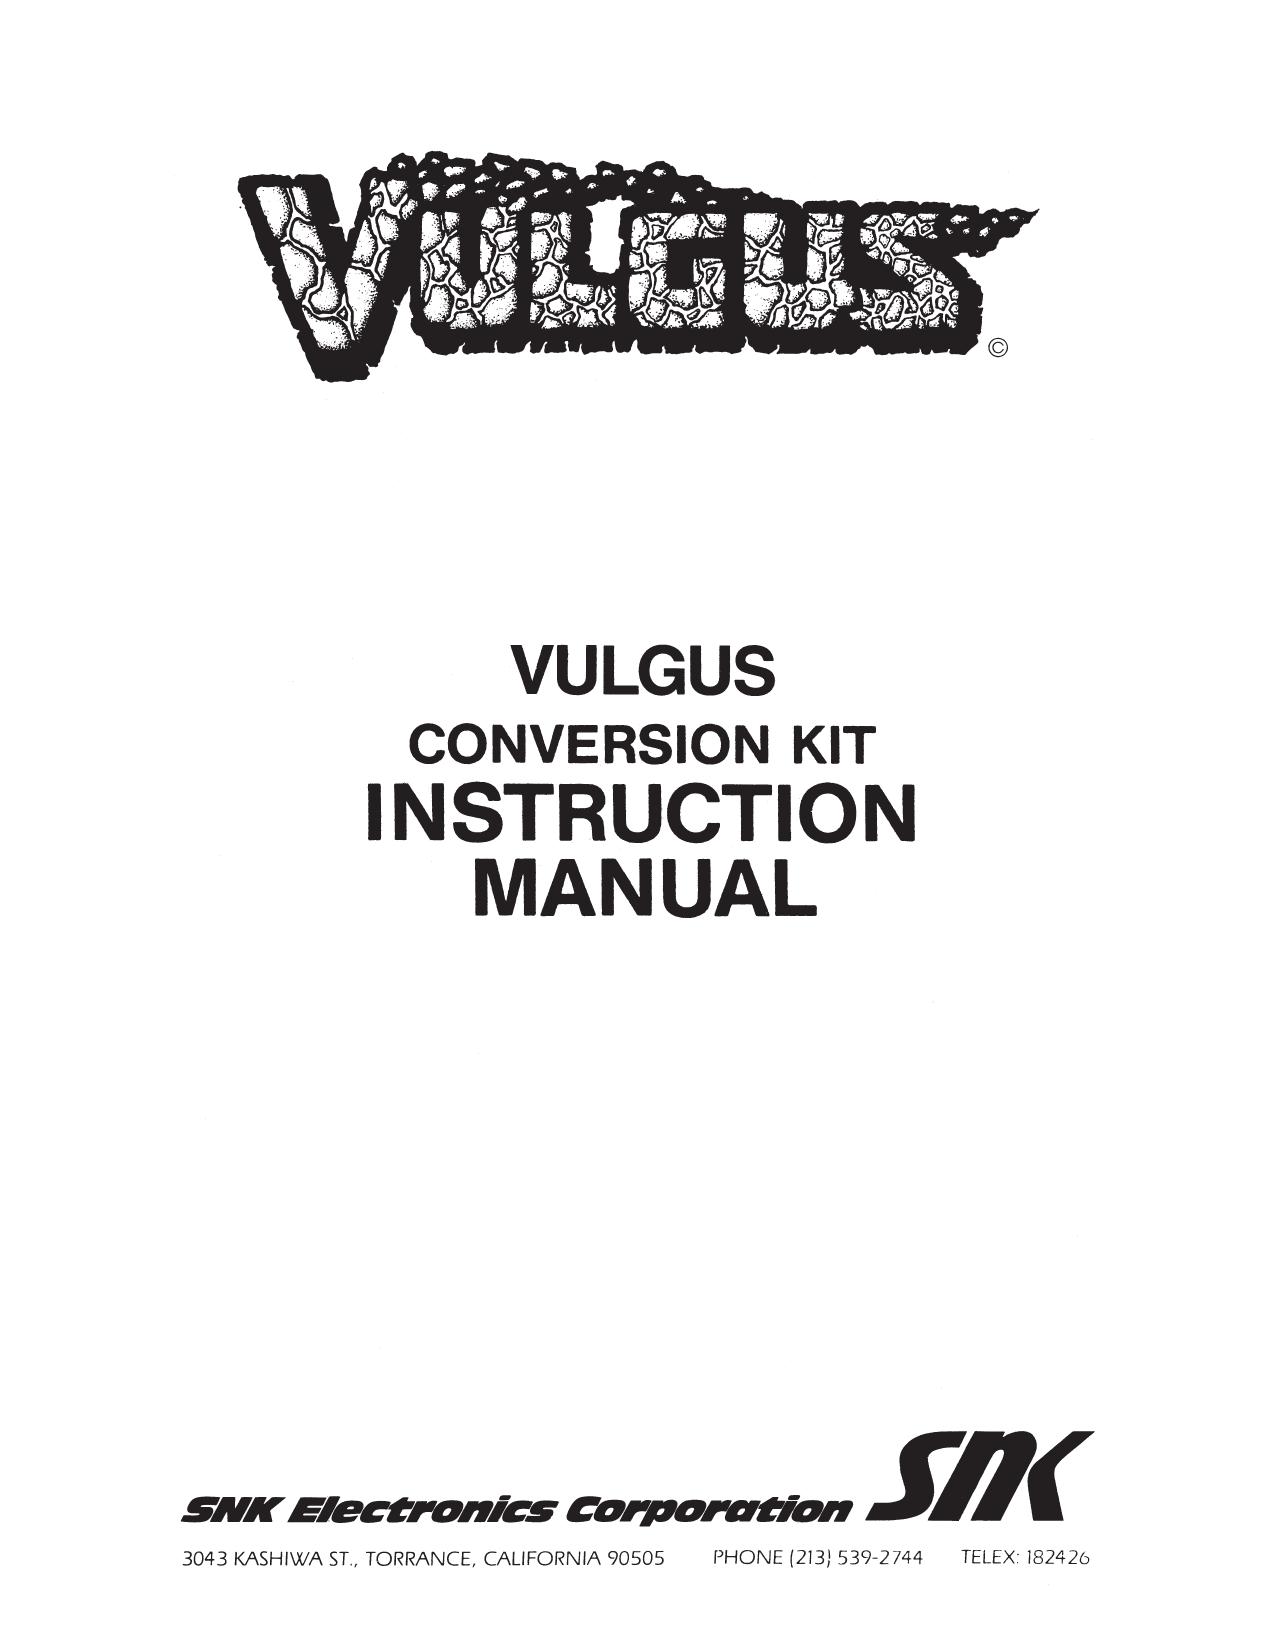 Capcom / SNK Vulgus Manual